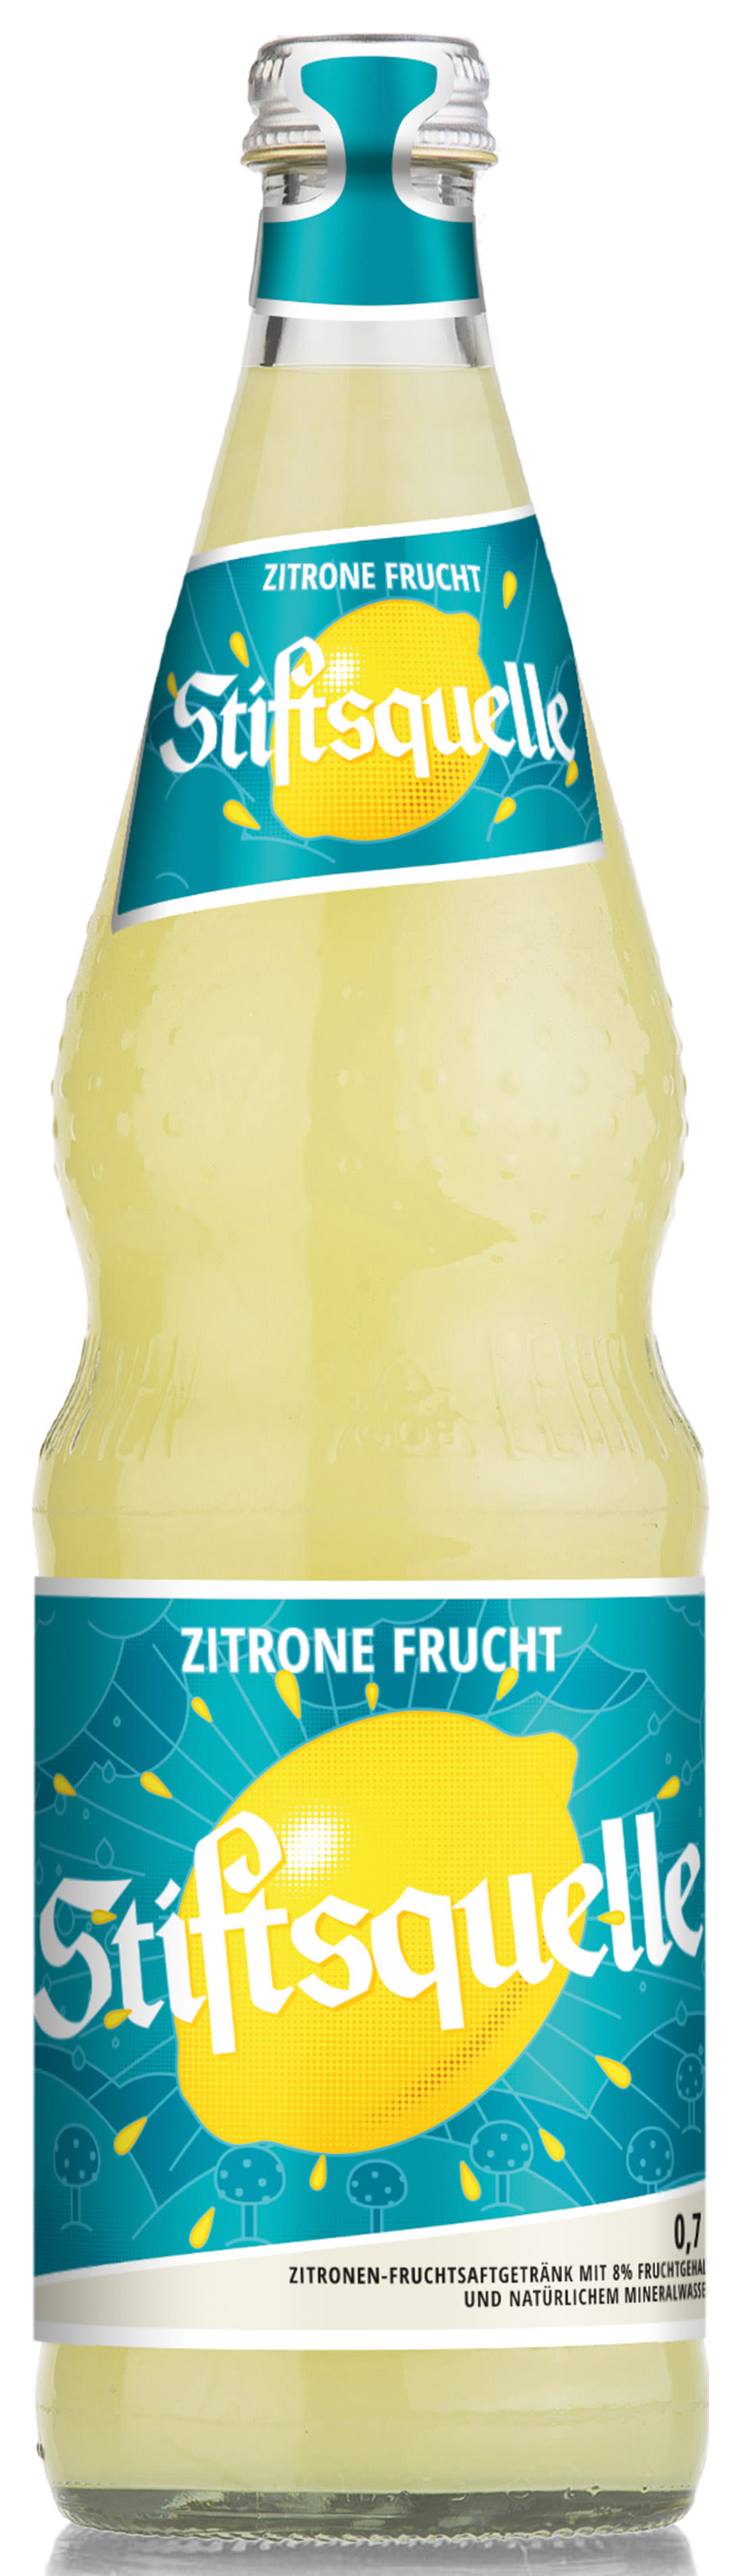 Stiftsquelle Zitrone-Frucht Trüb Kasten 12 x 0,7 l Glas Mehrweg